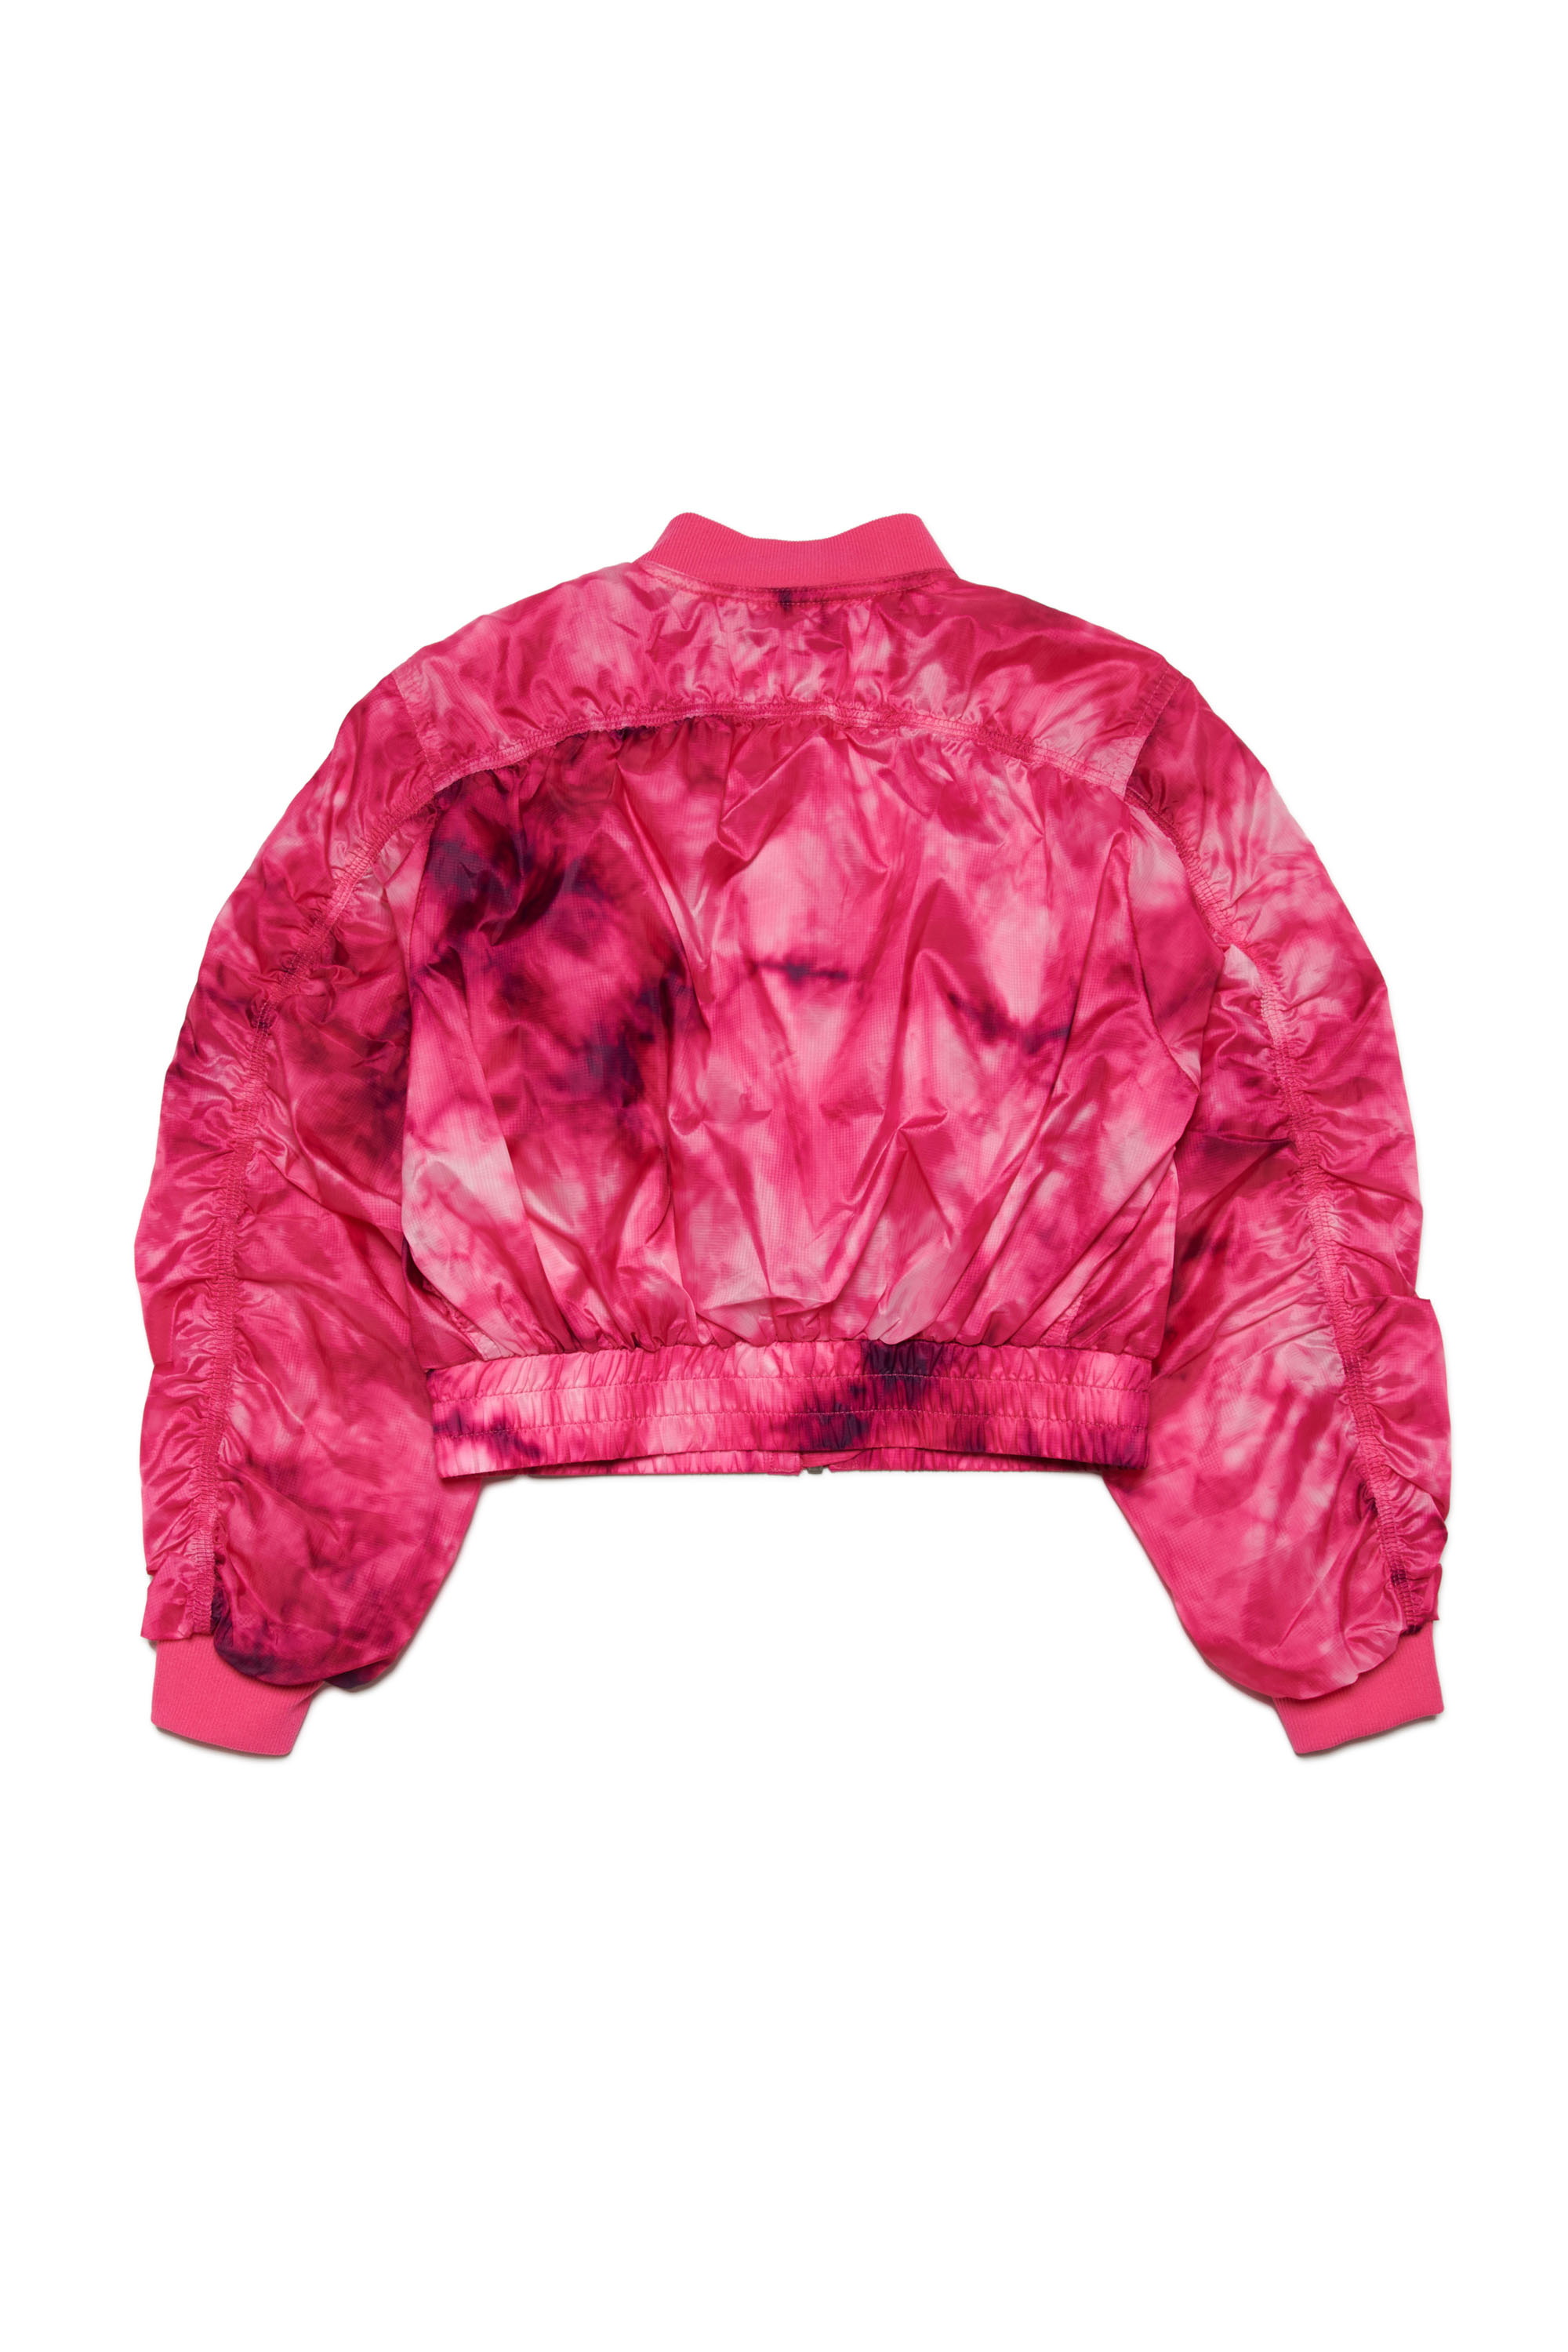 Diesel - JOAK, Woman Bomber jacket in tie-dye ripstop in Pink - Image 2